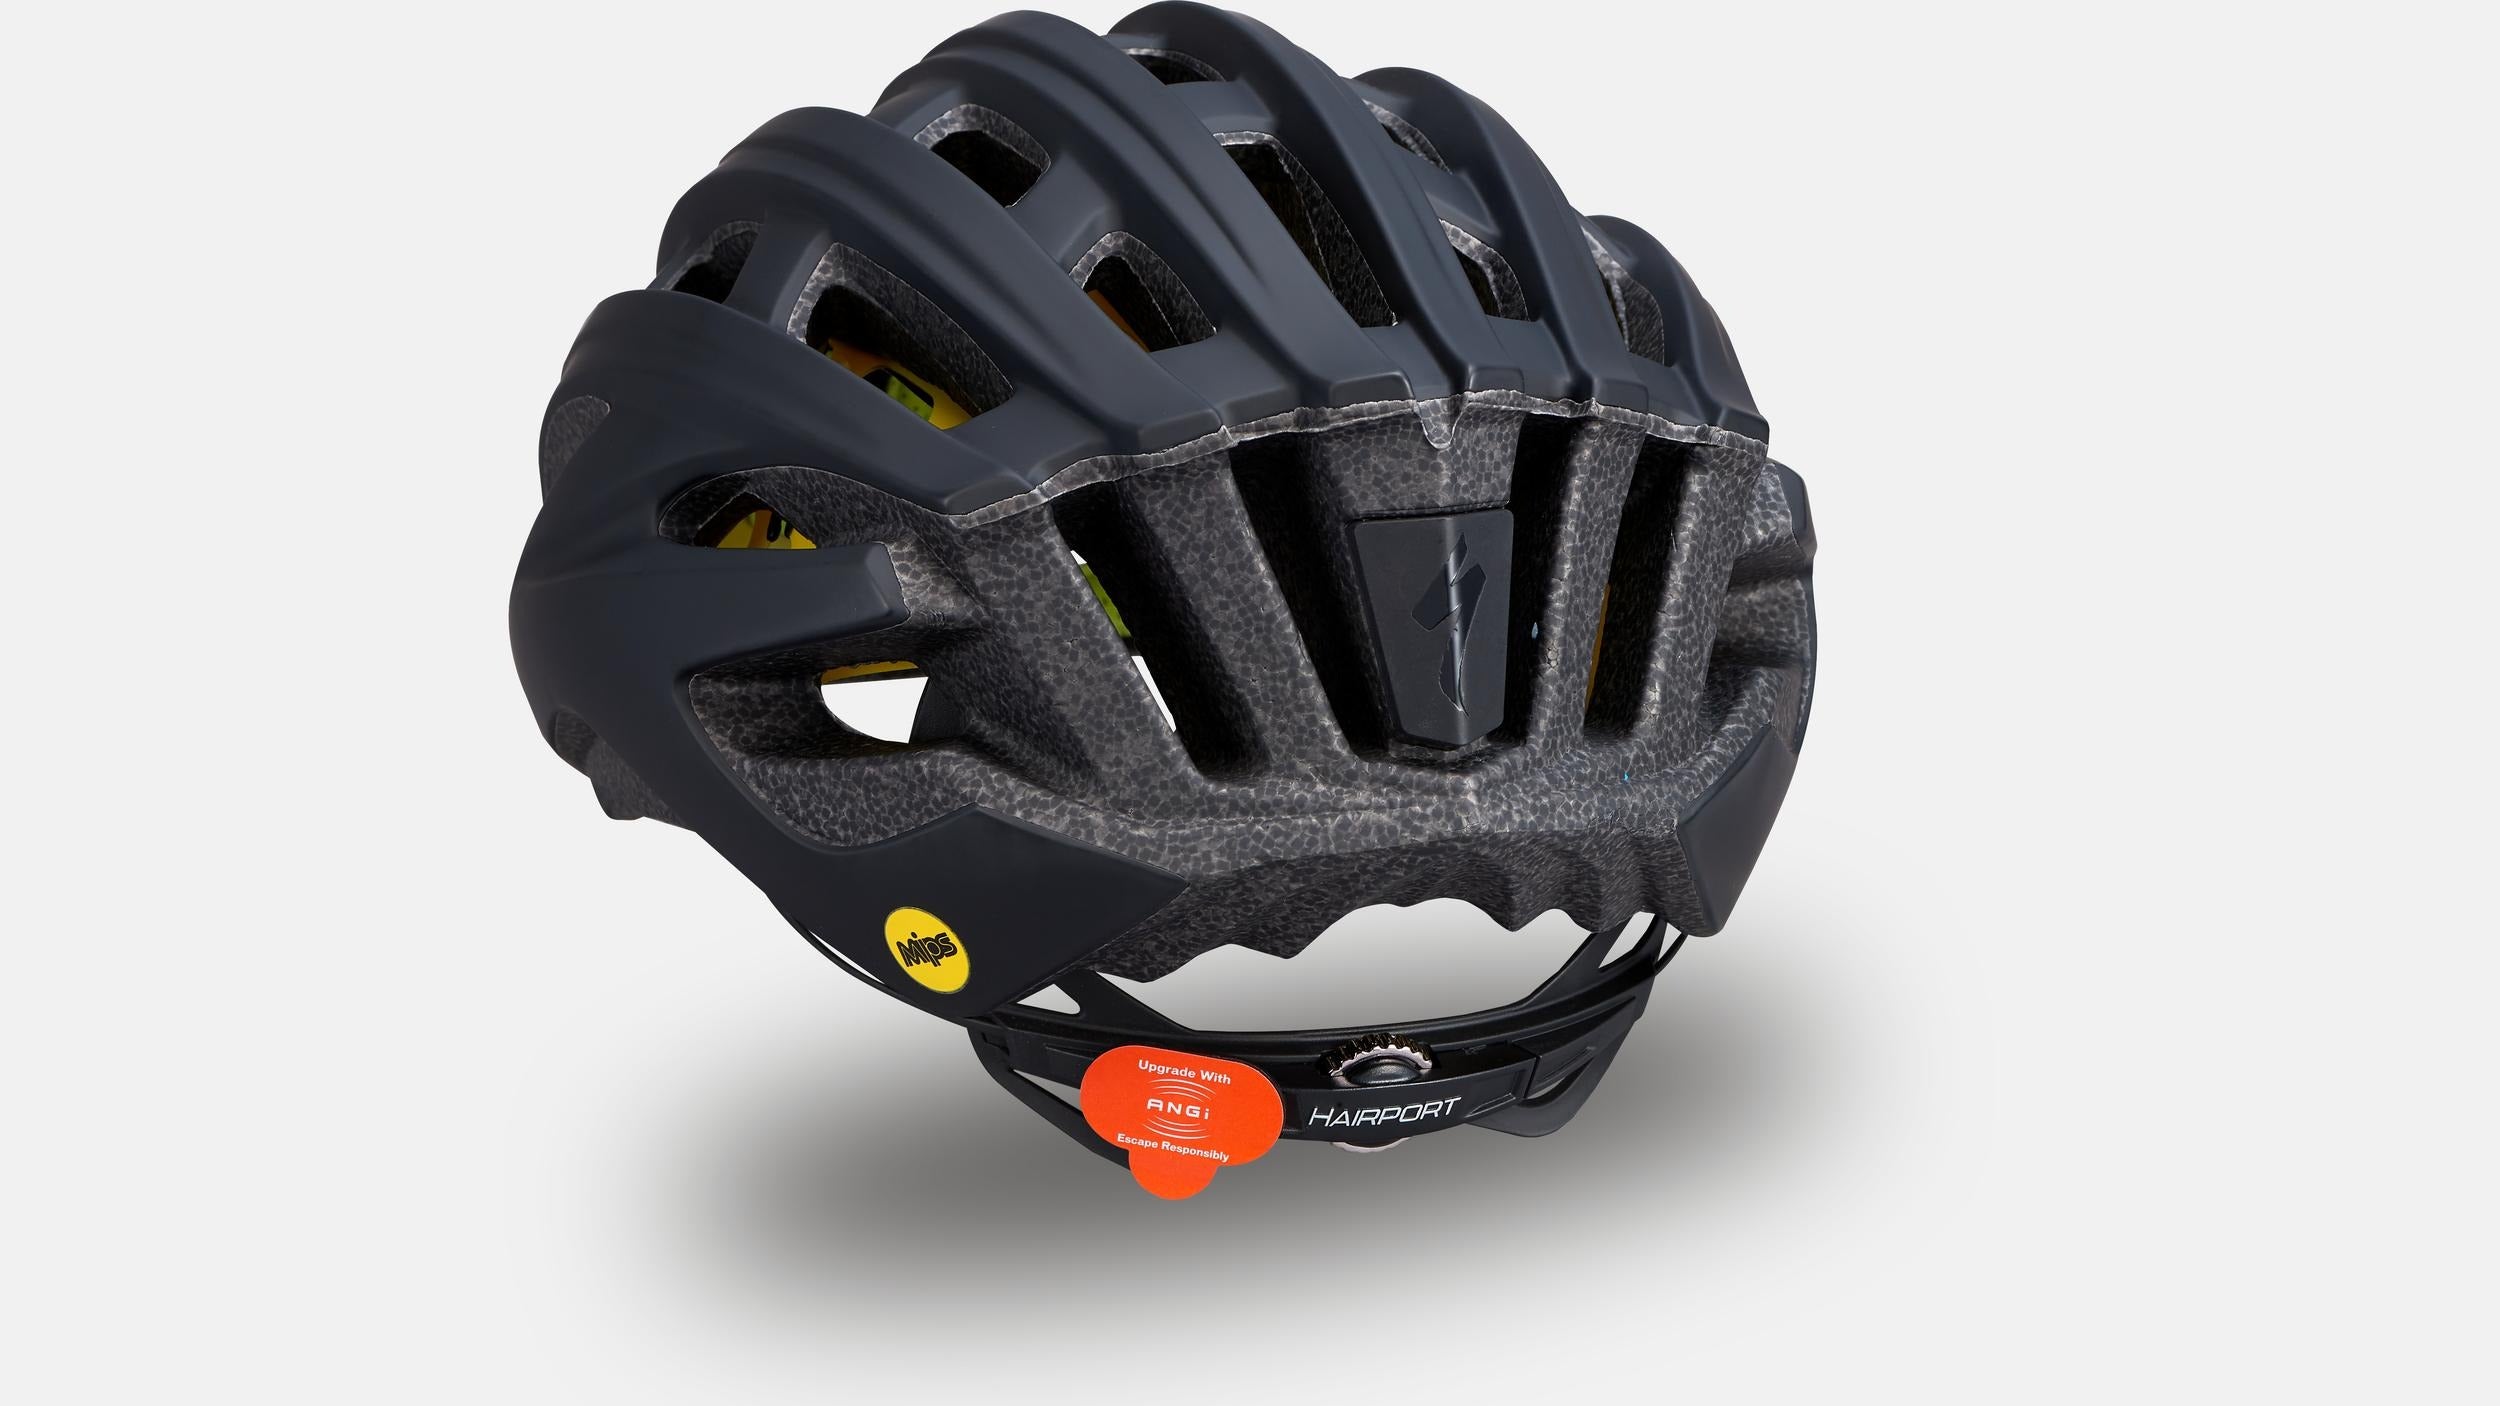 Specialized Propero III Bike Helmet Matte Black